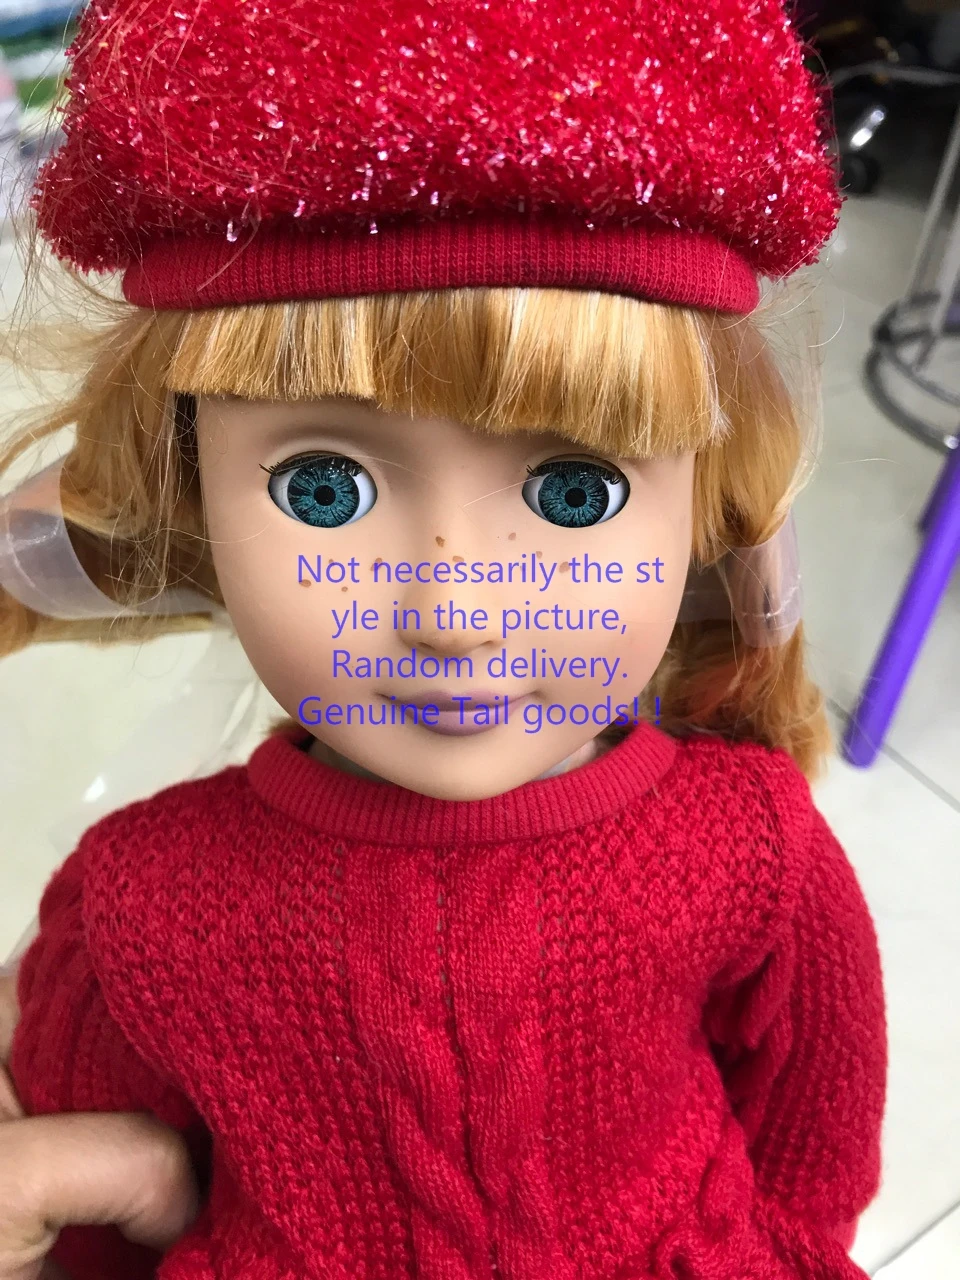 Игрушка американская кукла 18 дюймов платье кукла+ одежда обувь+ аксессуары игрушка подарок на день рождения девочка мальчик компания Товары для детей